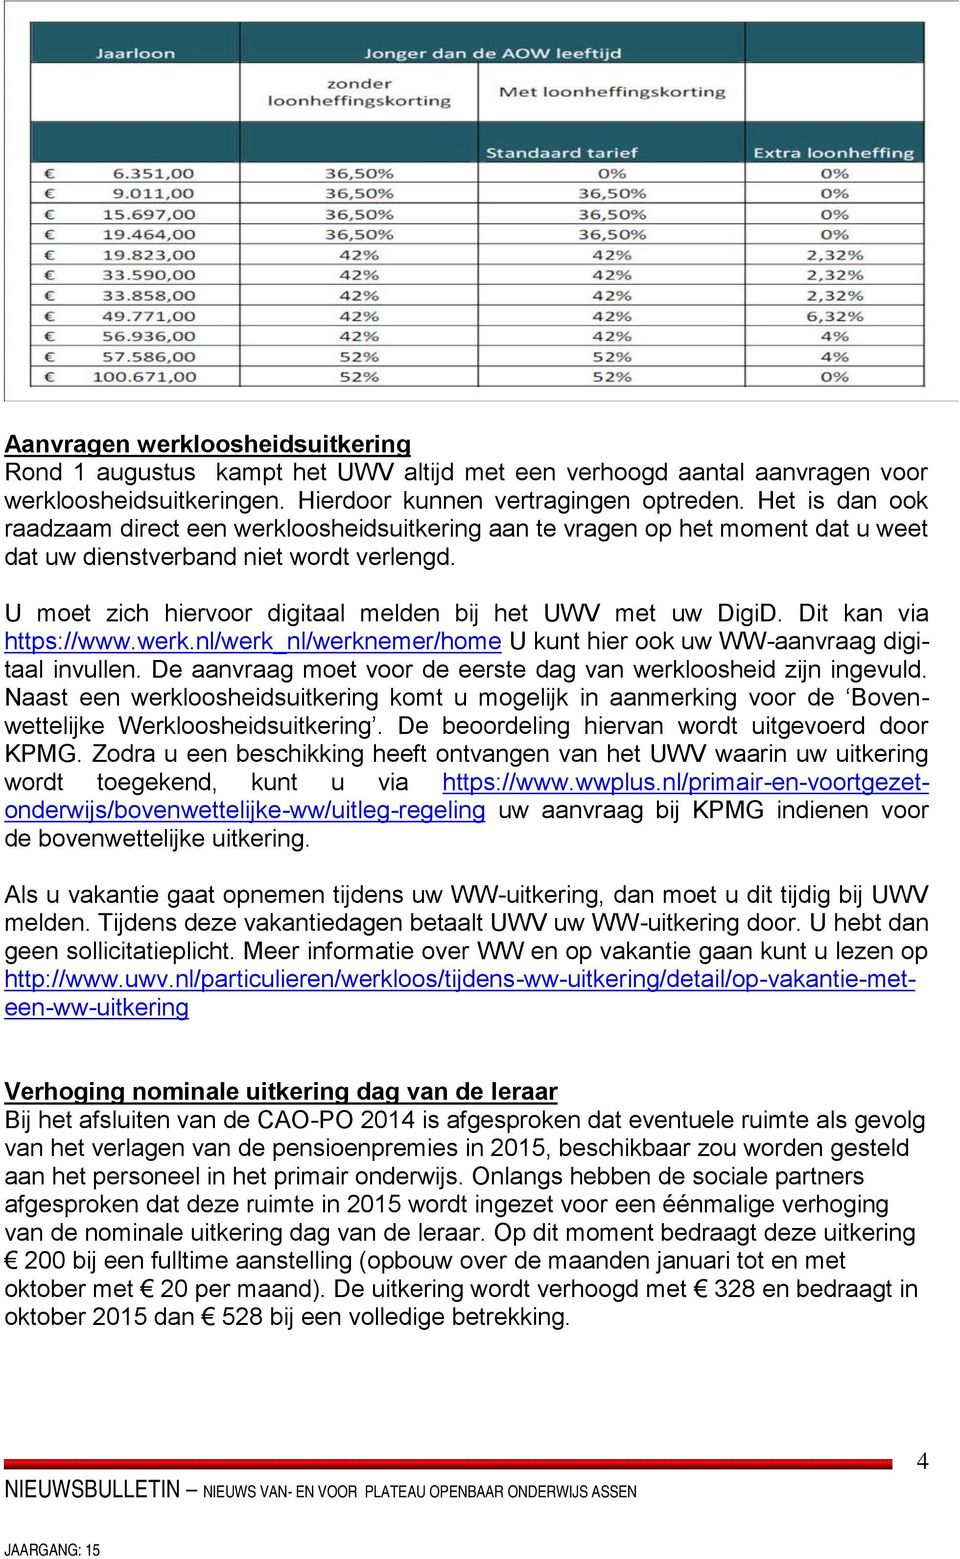 U moet zich hiervoor digitaal melden bij het UWV met uw DigiD. Dit kan via https://www.werk.nl/werk_nl/werknemer/home U kunt hier ook uw WW-aanvraag digitaal invullen.